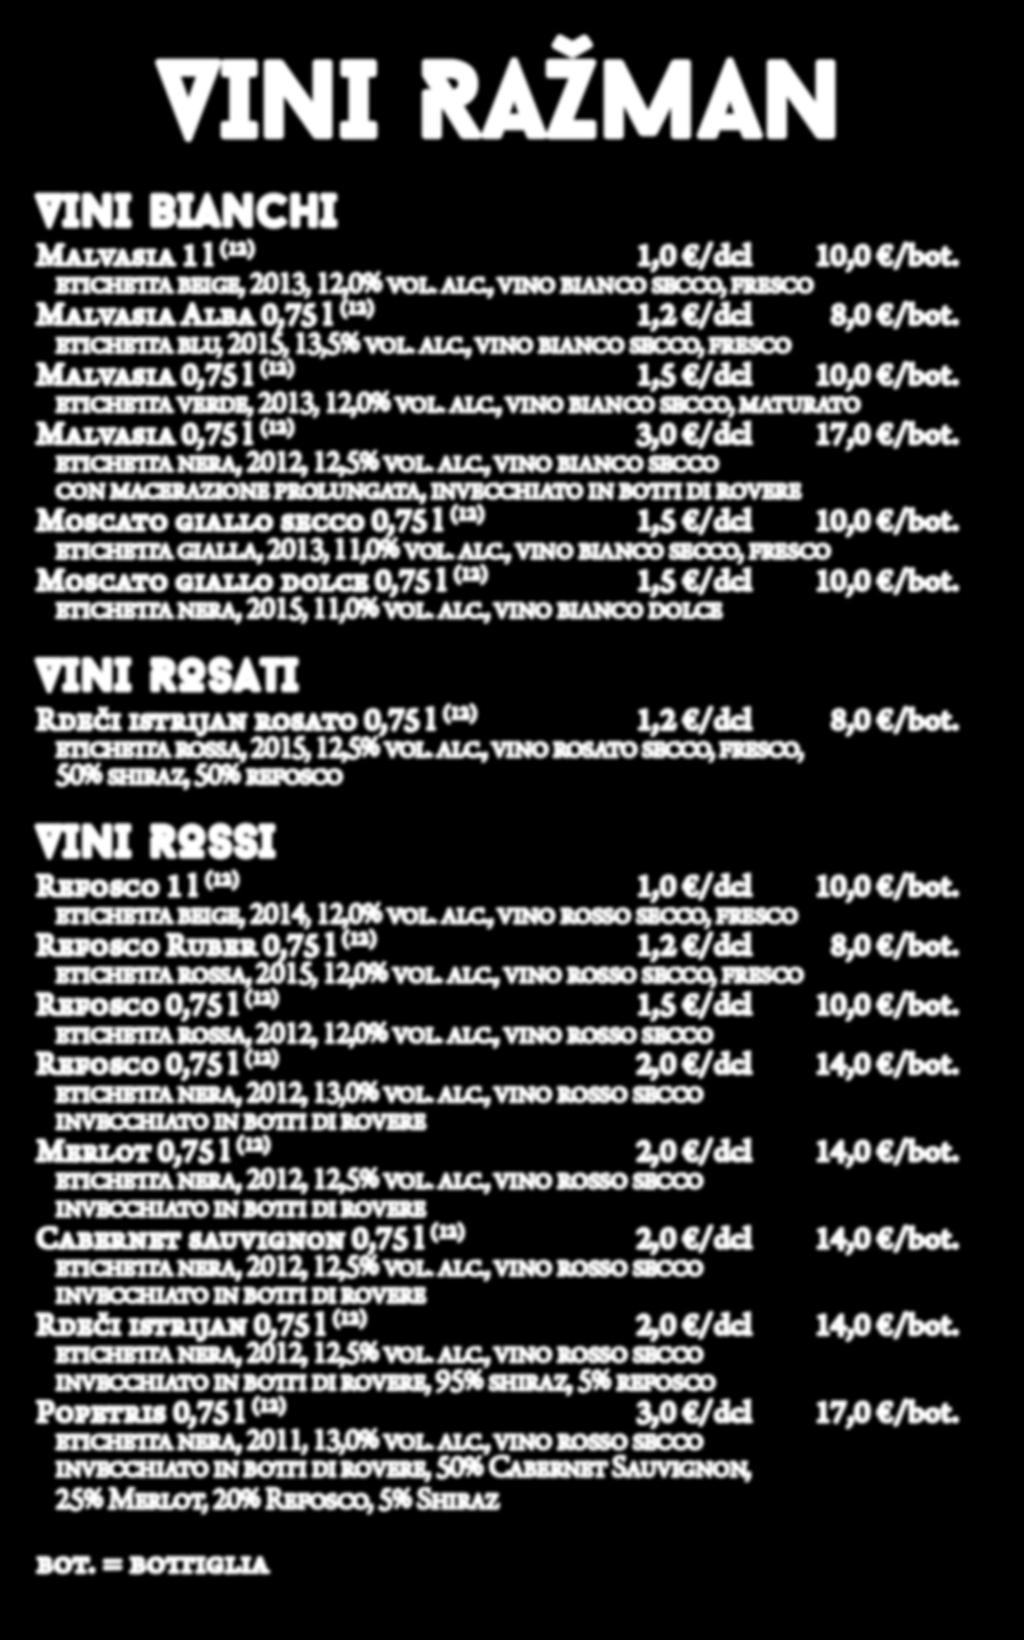 VINI RAŽMAN VINI BIANCHI Malvasia 1 l (12) 1,0 /dcl 10,0 /bot. etichetta beige, 2013, 12,0% vol. alc., vino bianco secco, fresco Malvasia Alba 0,75 l (12) 1,2 /dcl 8,0 /bot.